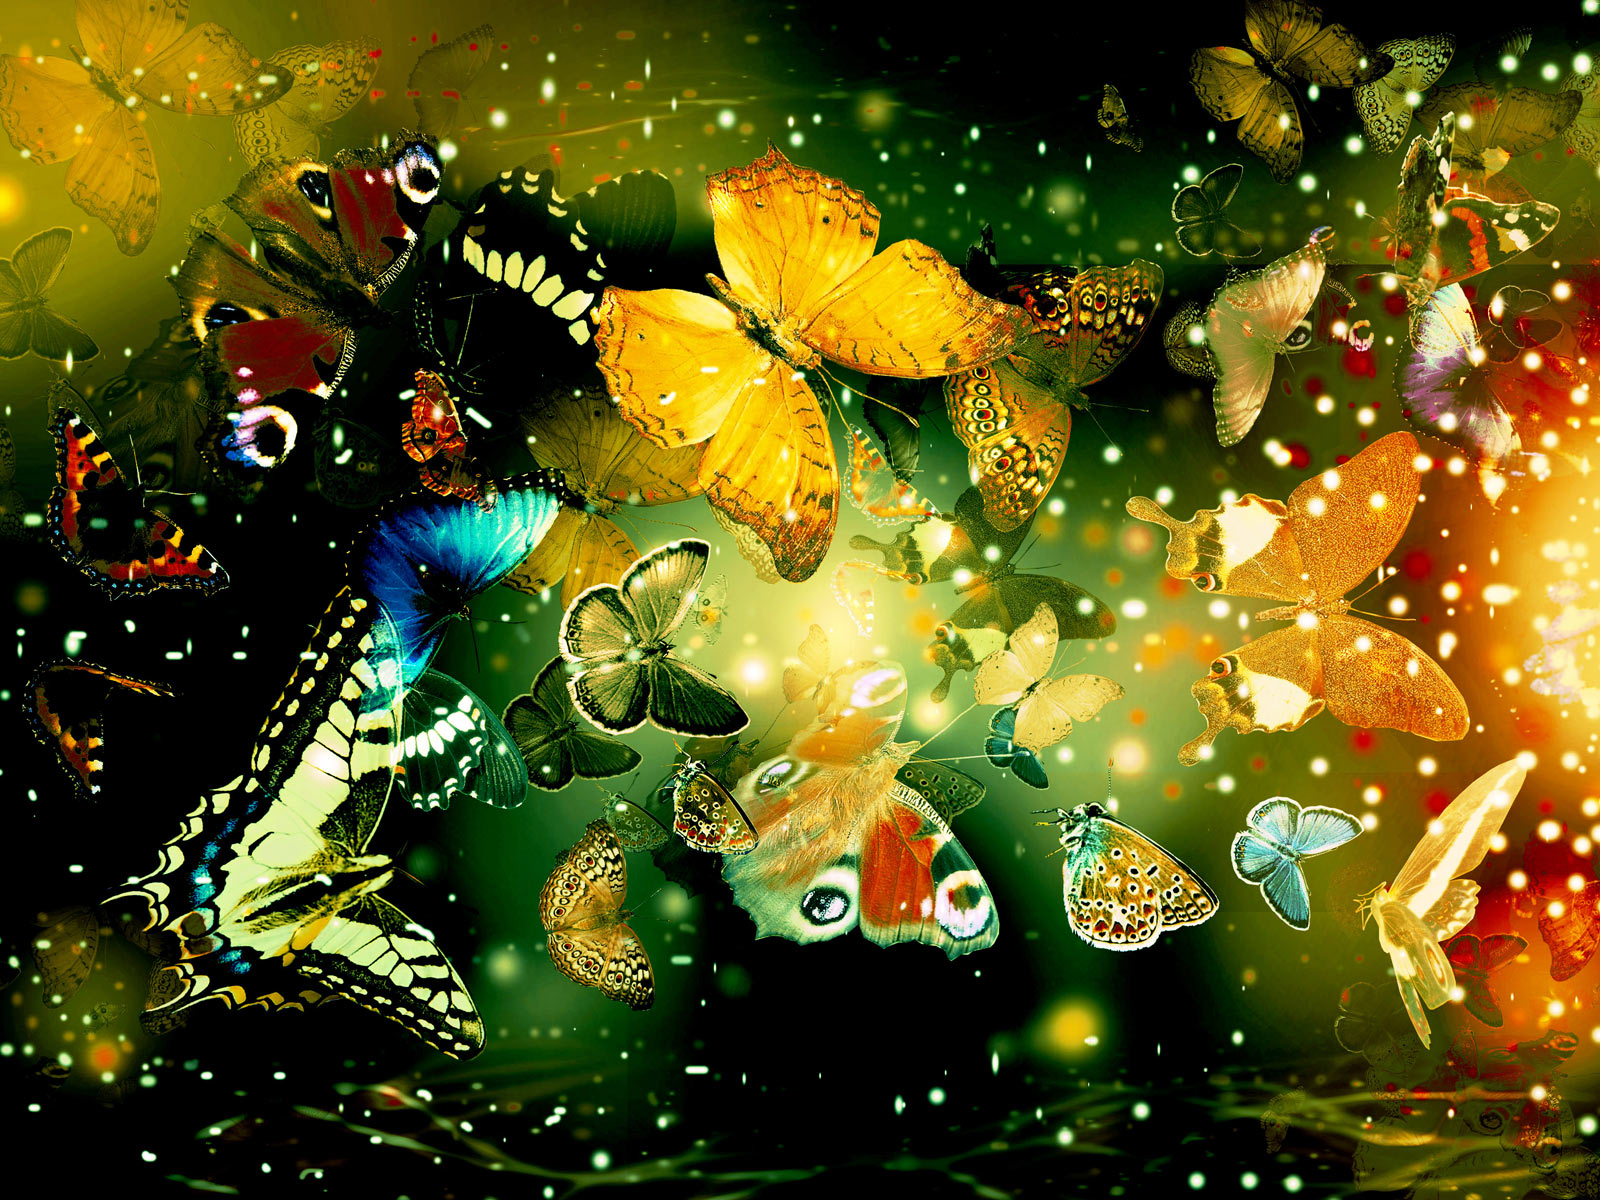  Butterflies desktop backgrounds hd Wallpaper and make this wallpaper